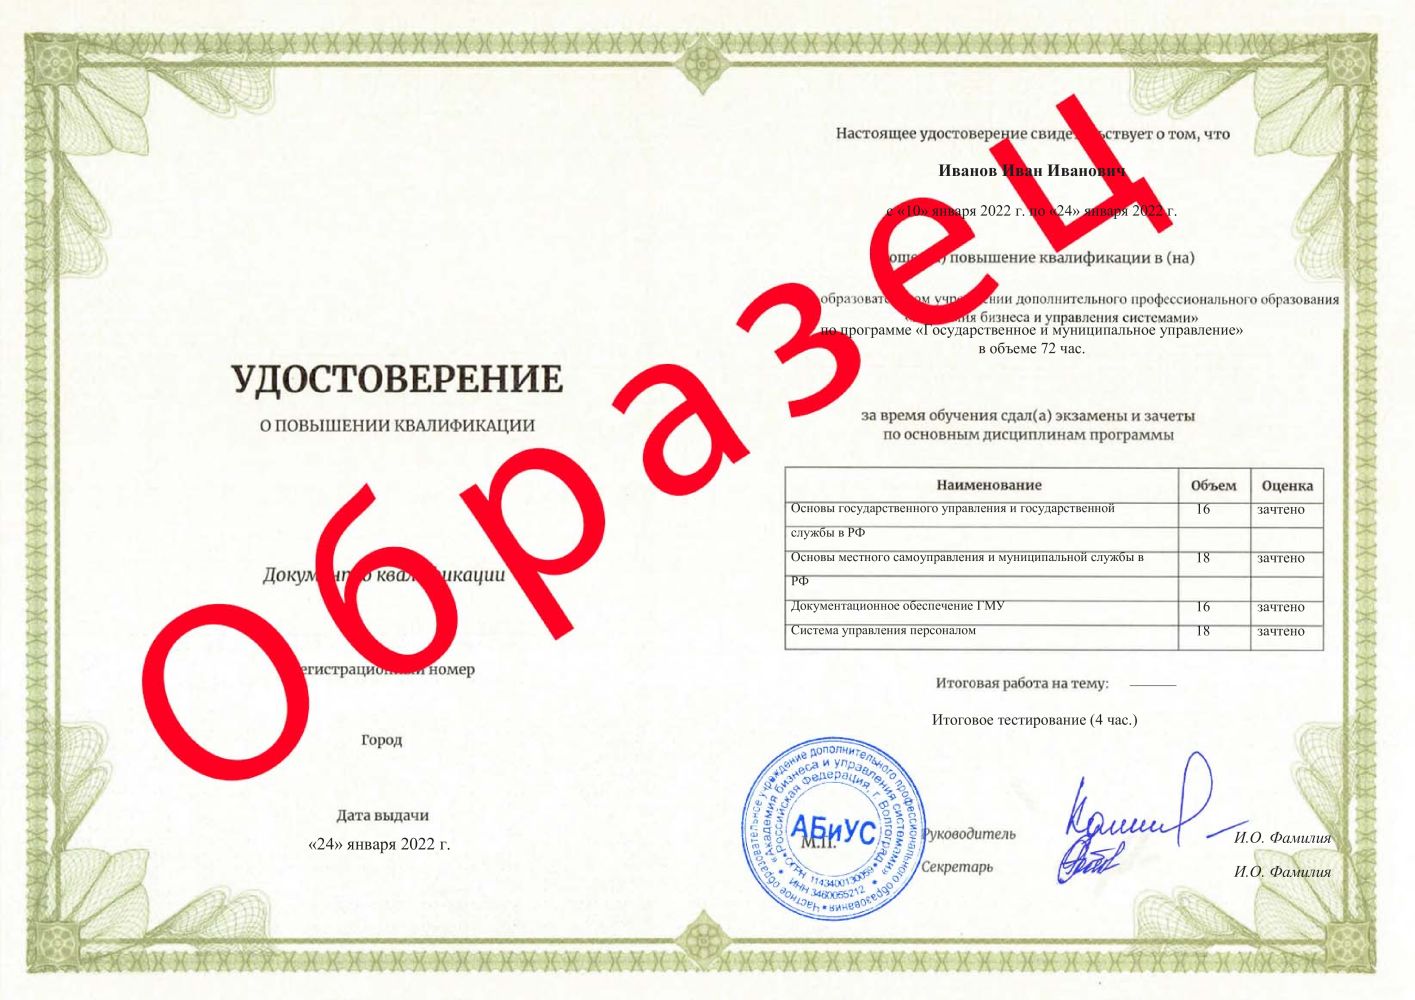 Удостоверение Государственное и муниципальное управление 72 часа 4188 руб.